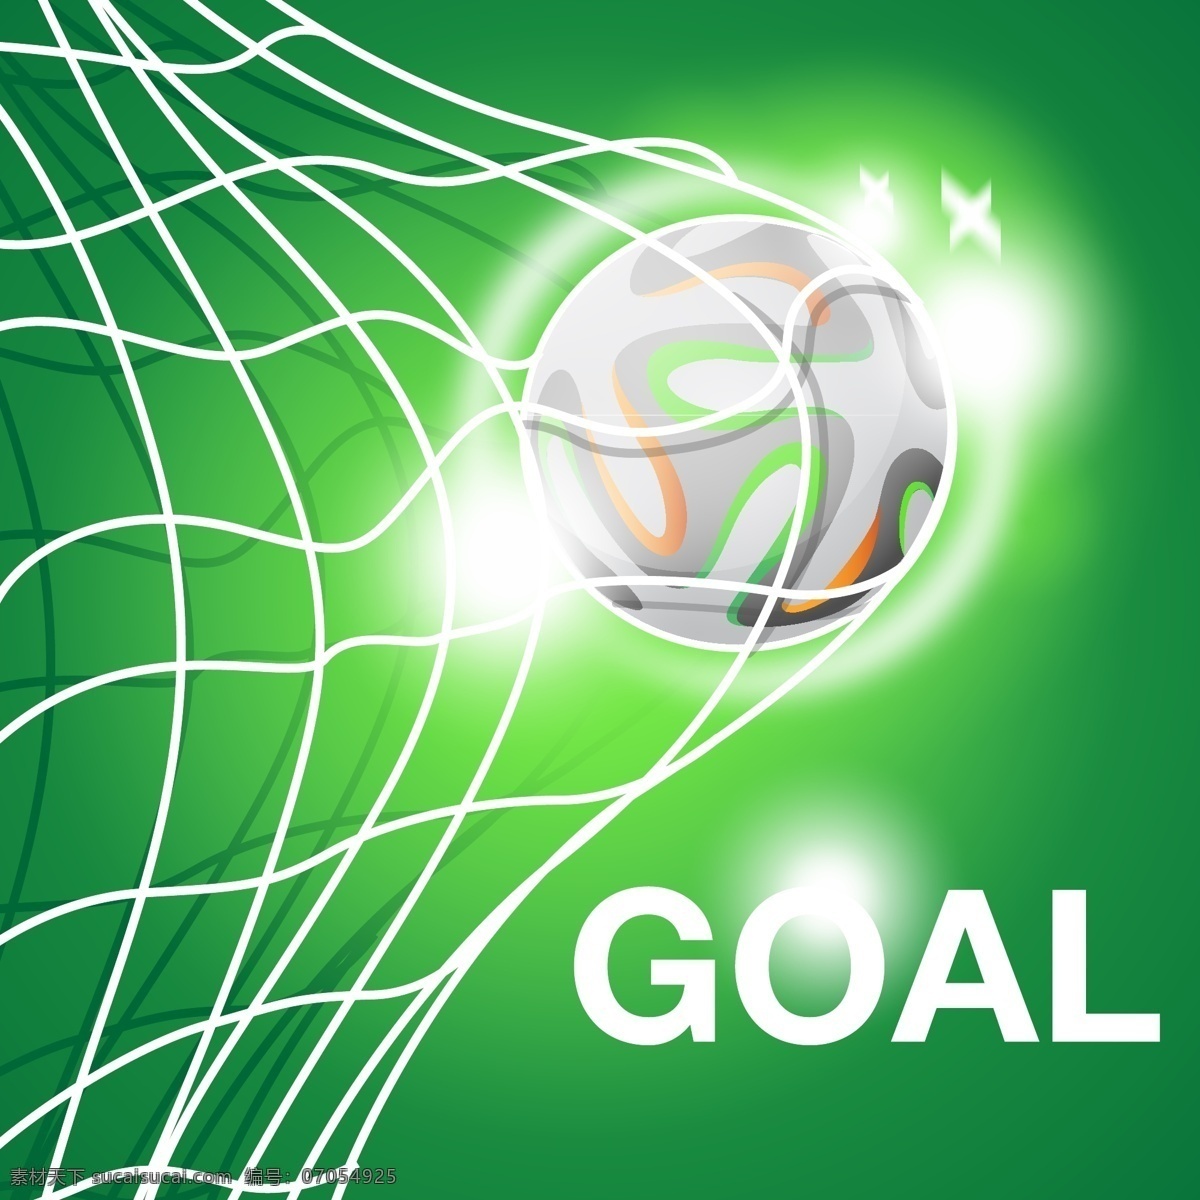 足球 射中 目标 元素 发光 世界杯 足球比赛 球网 装饰元素 元素设计 足球图案 ai素材 足球矢量图 足球主题